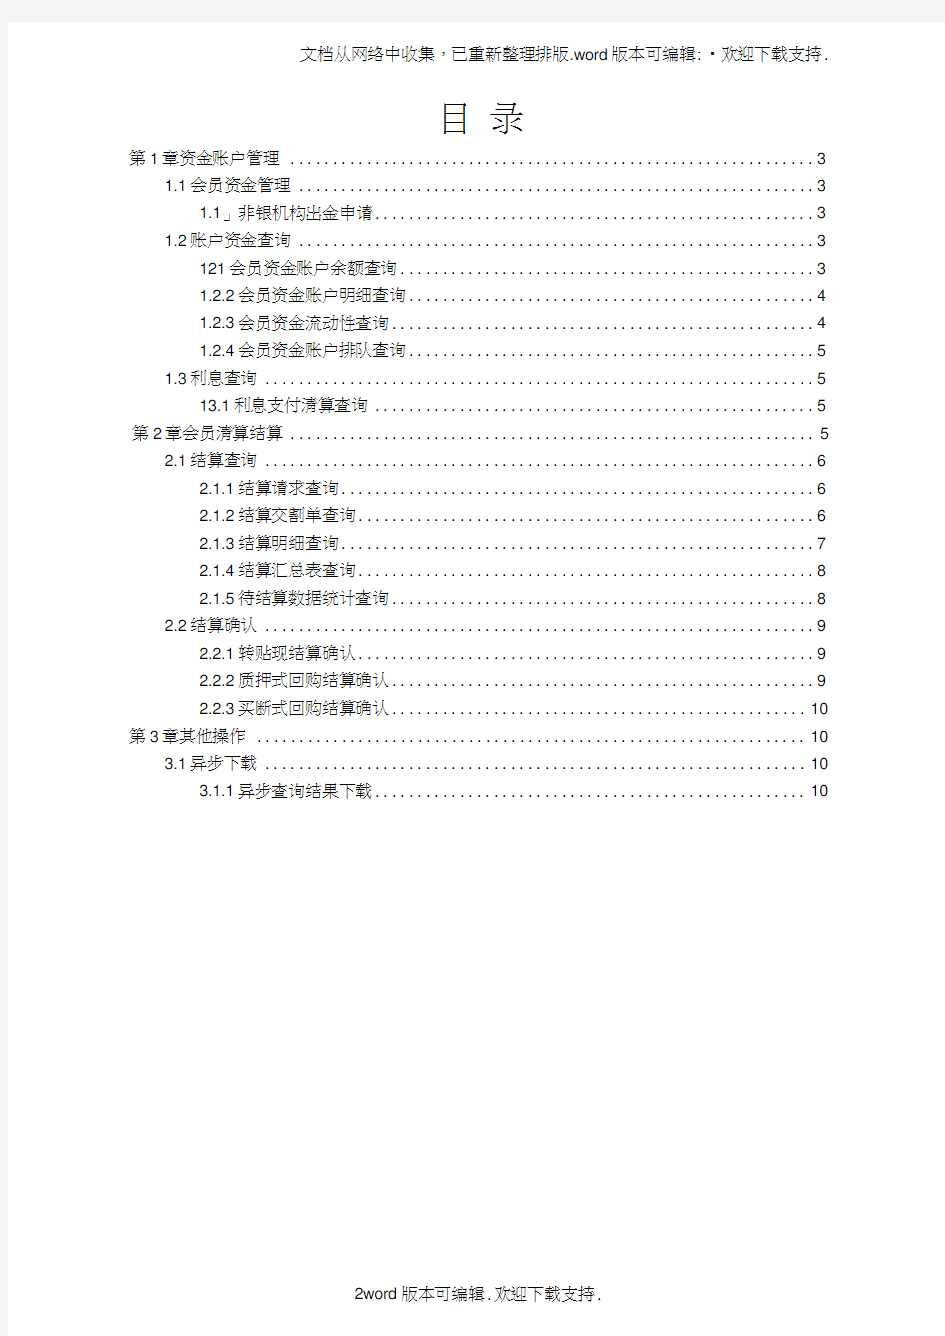 中国票据交易系统用户操作手册清算结算